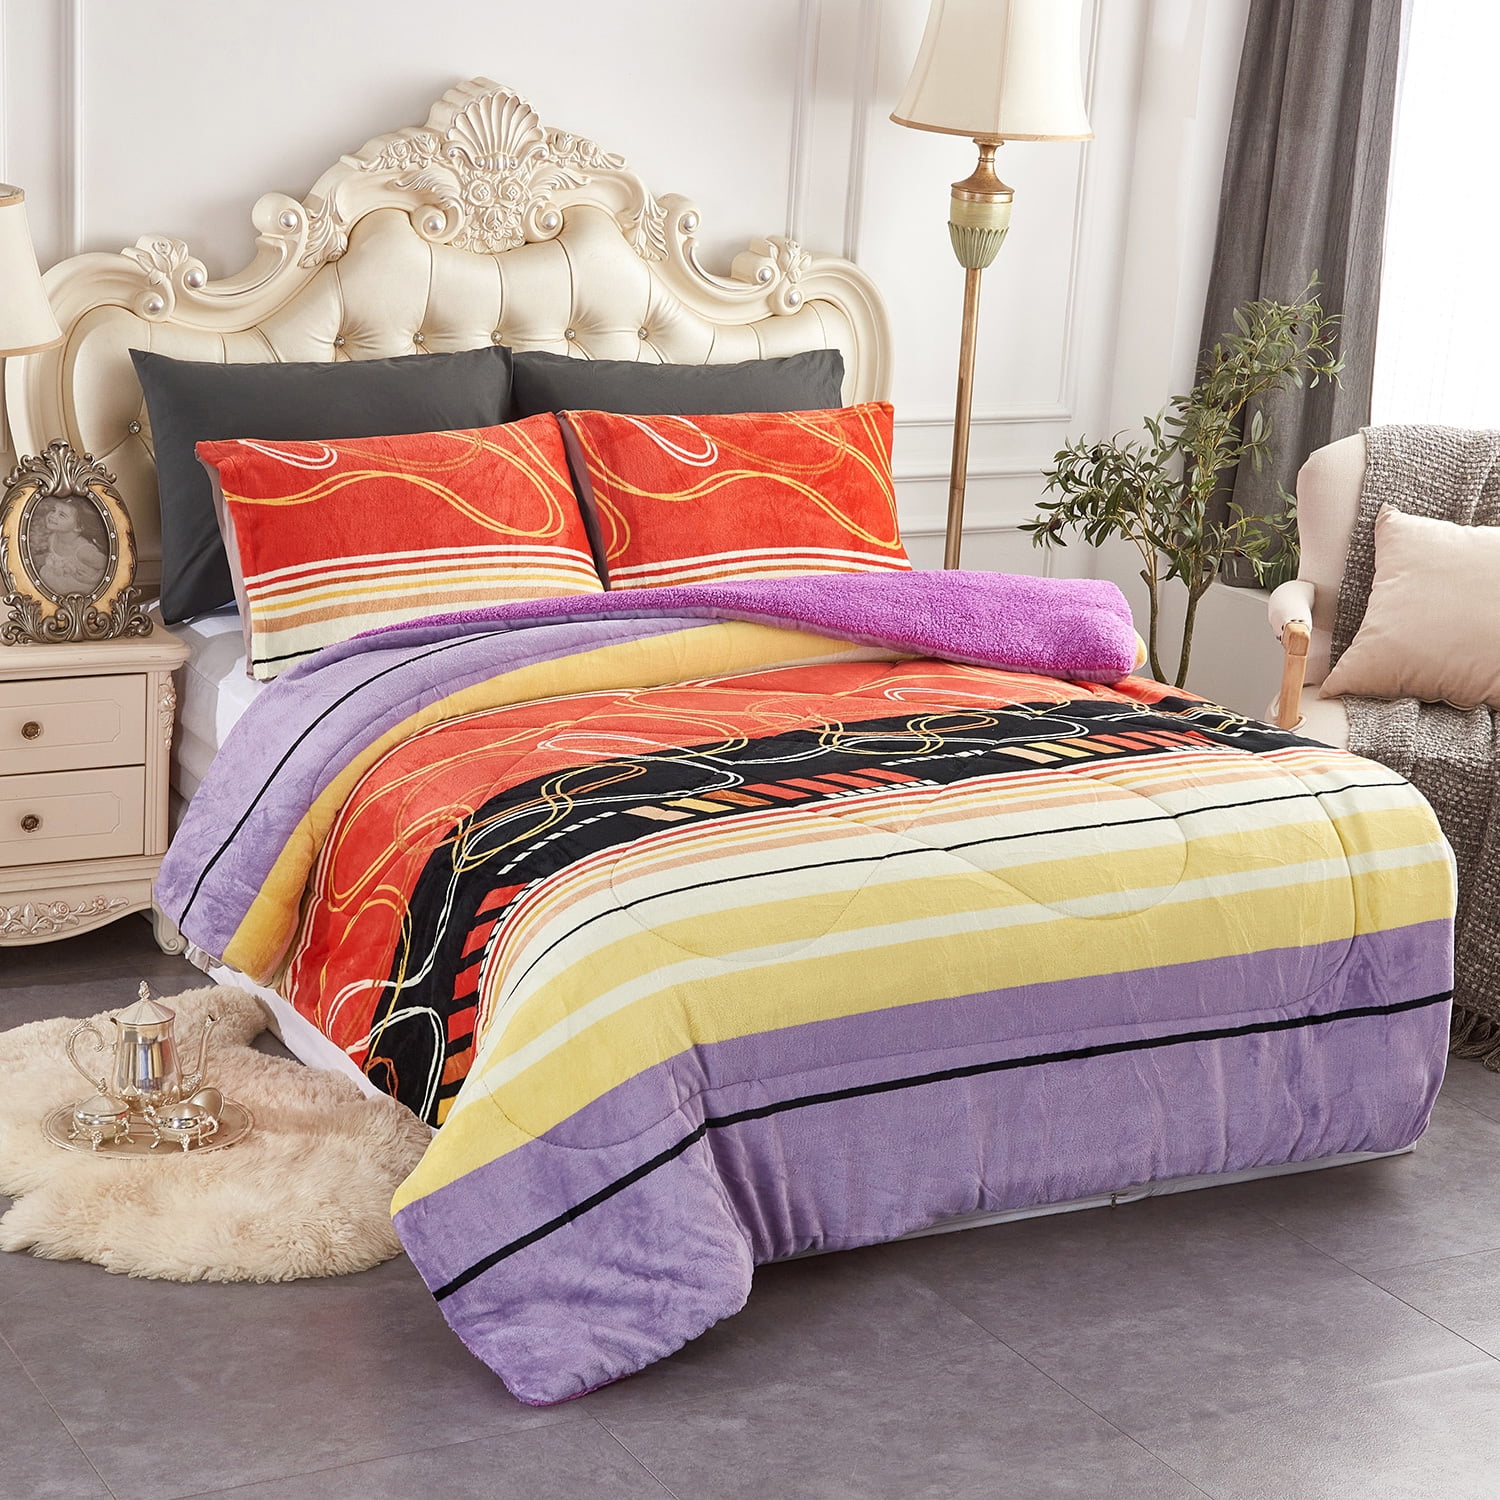 JML 3 Piece Queen Sherpa Fleece Bed Blanket Set,Heavy Winter Borrego Blanket  75x83,5.7lb 